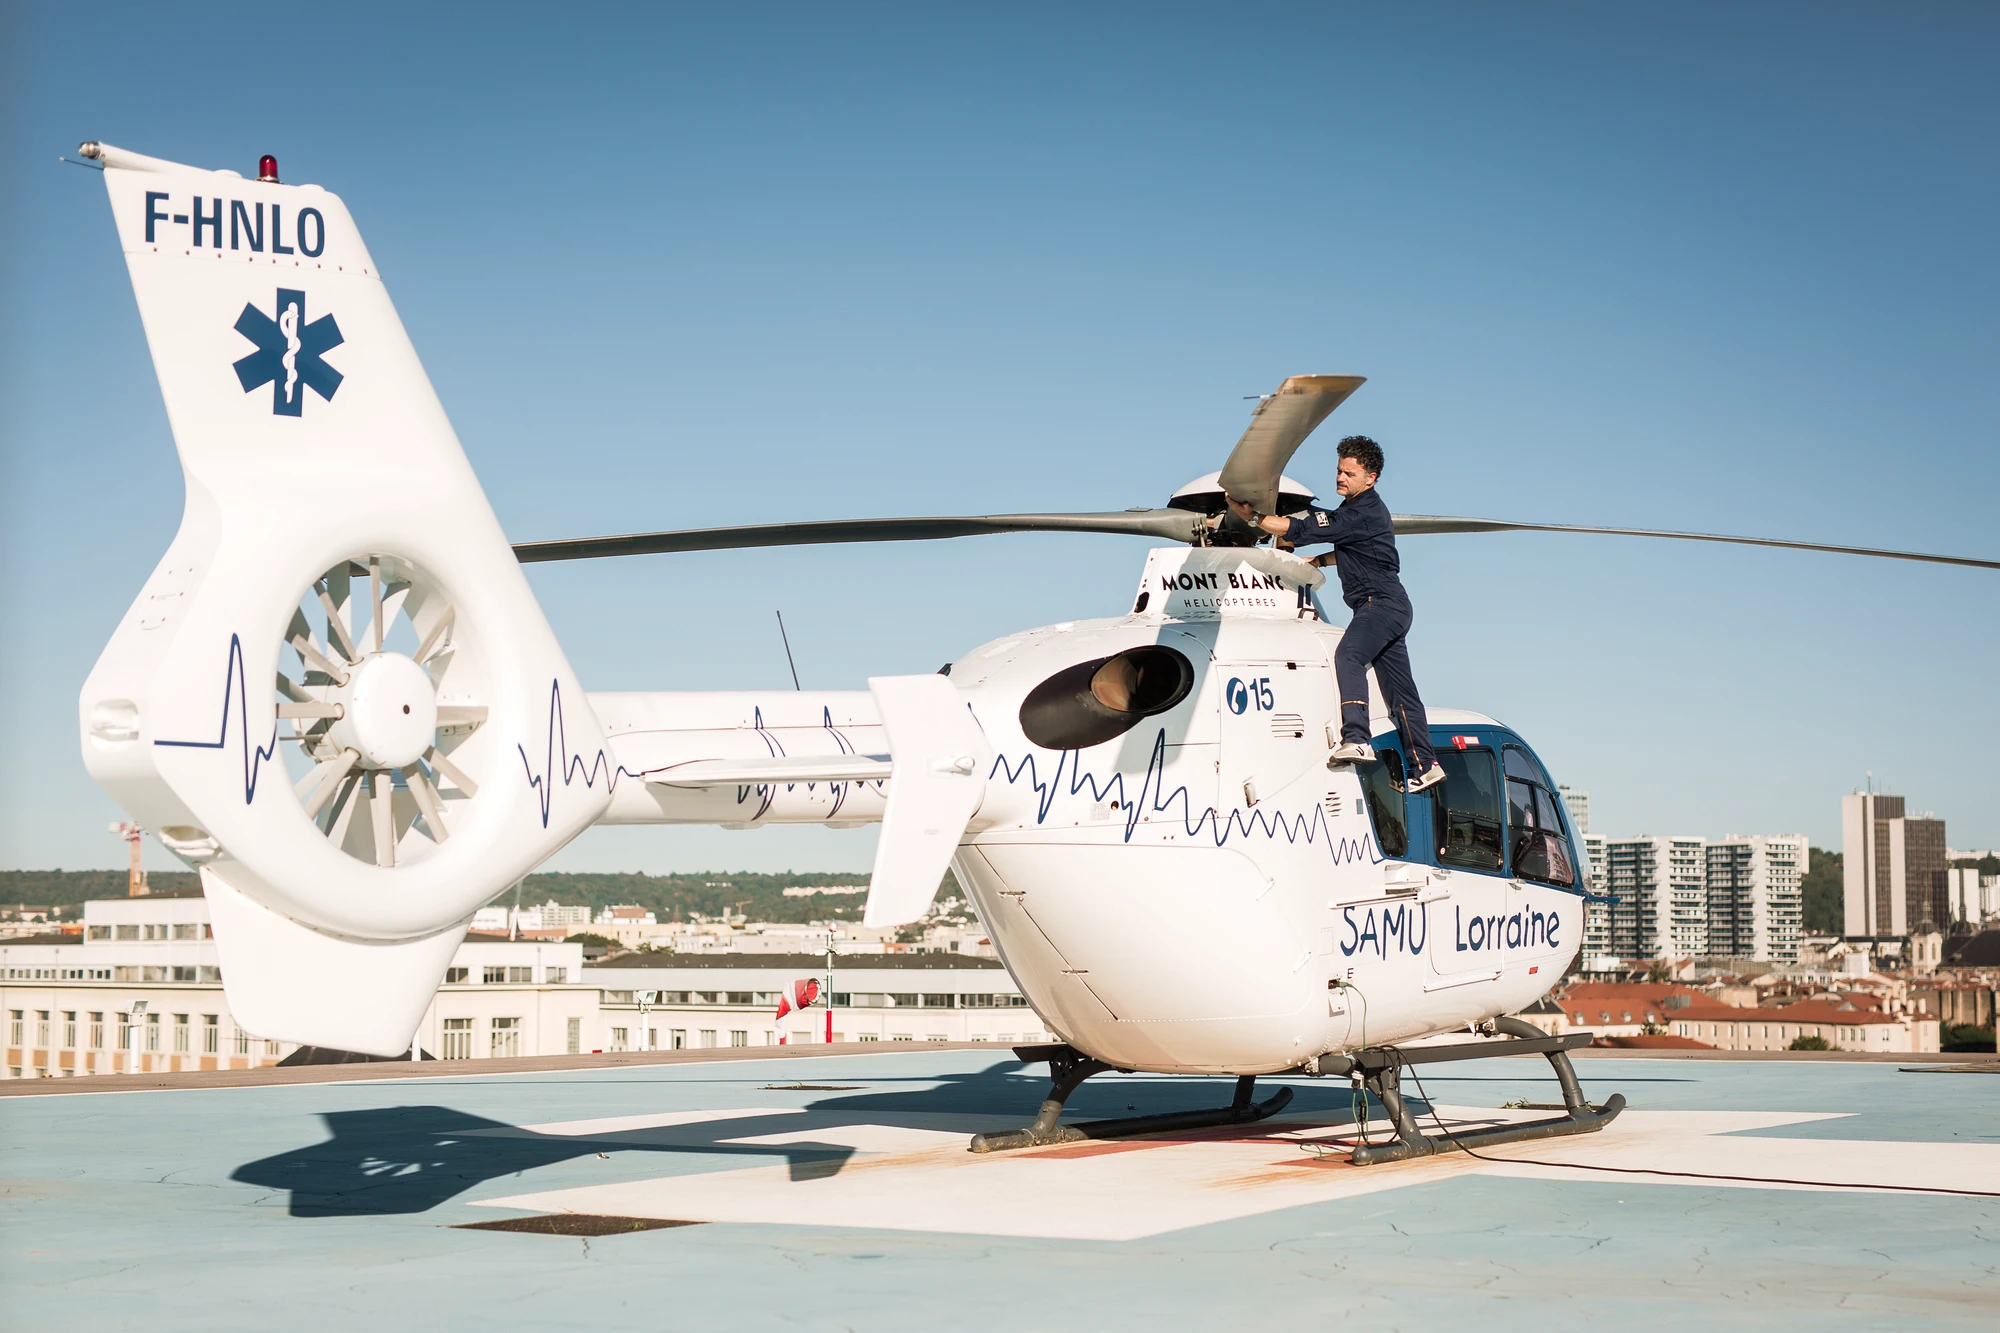 photographe nancy pilote helicoptere samu lorraine ec135 cyril bonci f-hnlo 01